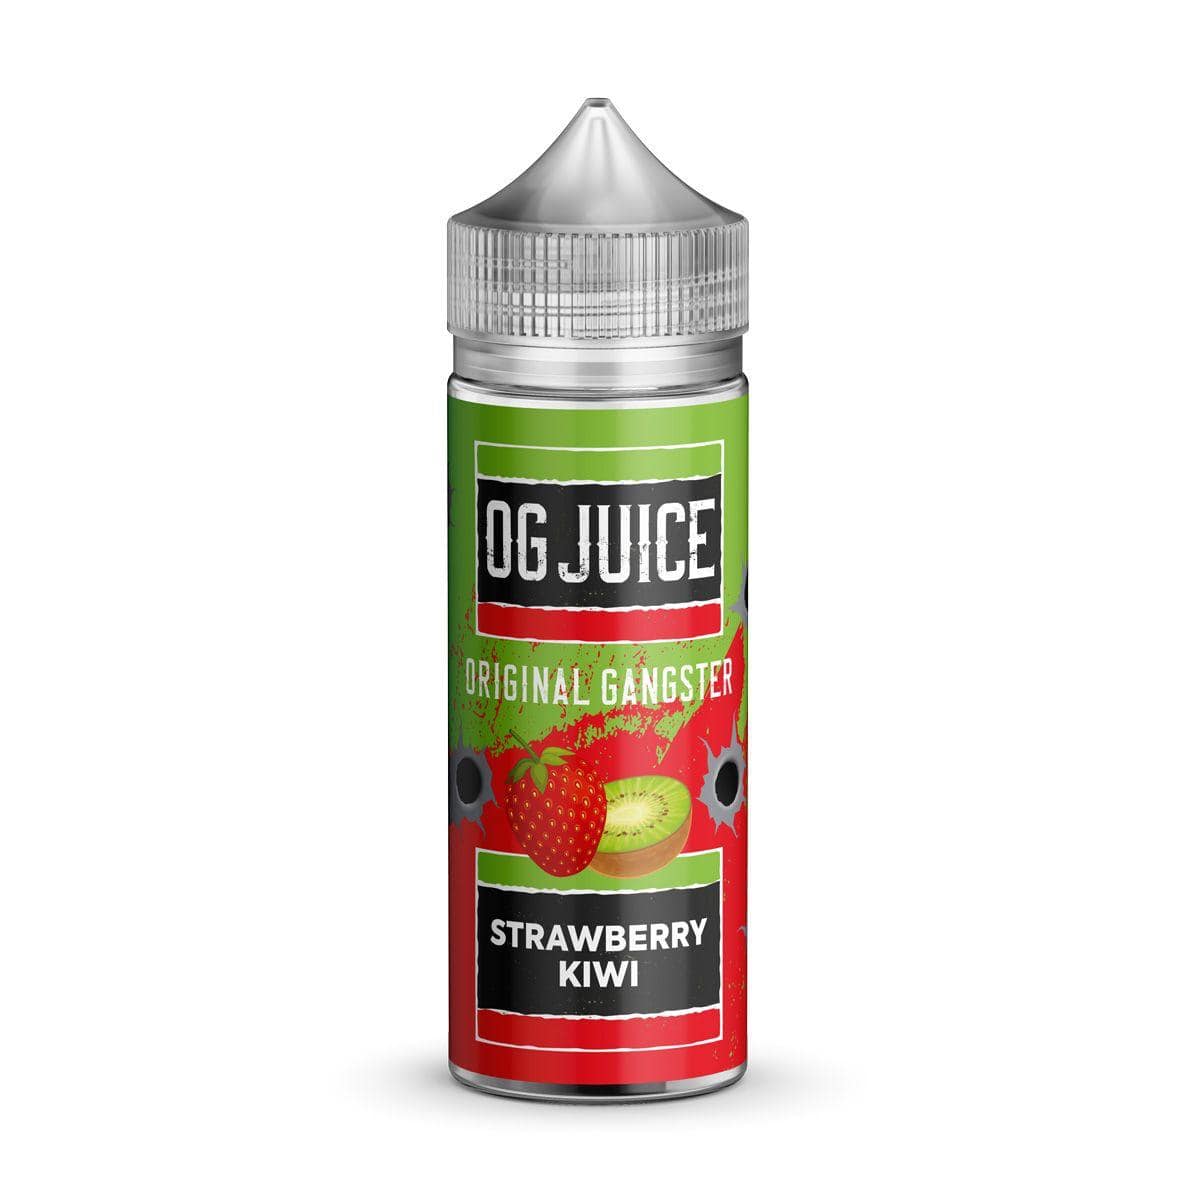 OG Juice Original Gangster - Strawberry Kiwi - 100ml E-liquid Shortfill - Mcr Vape Distro